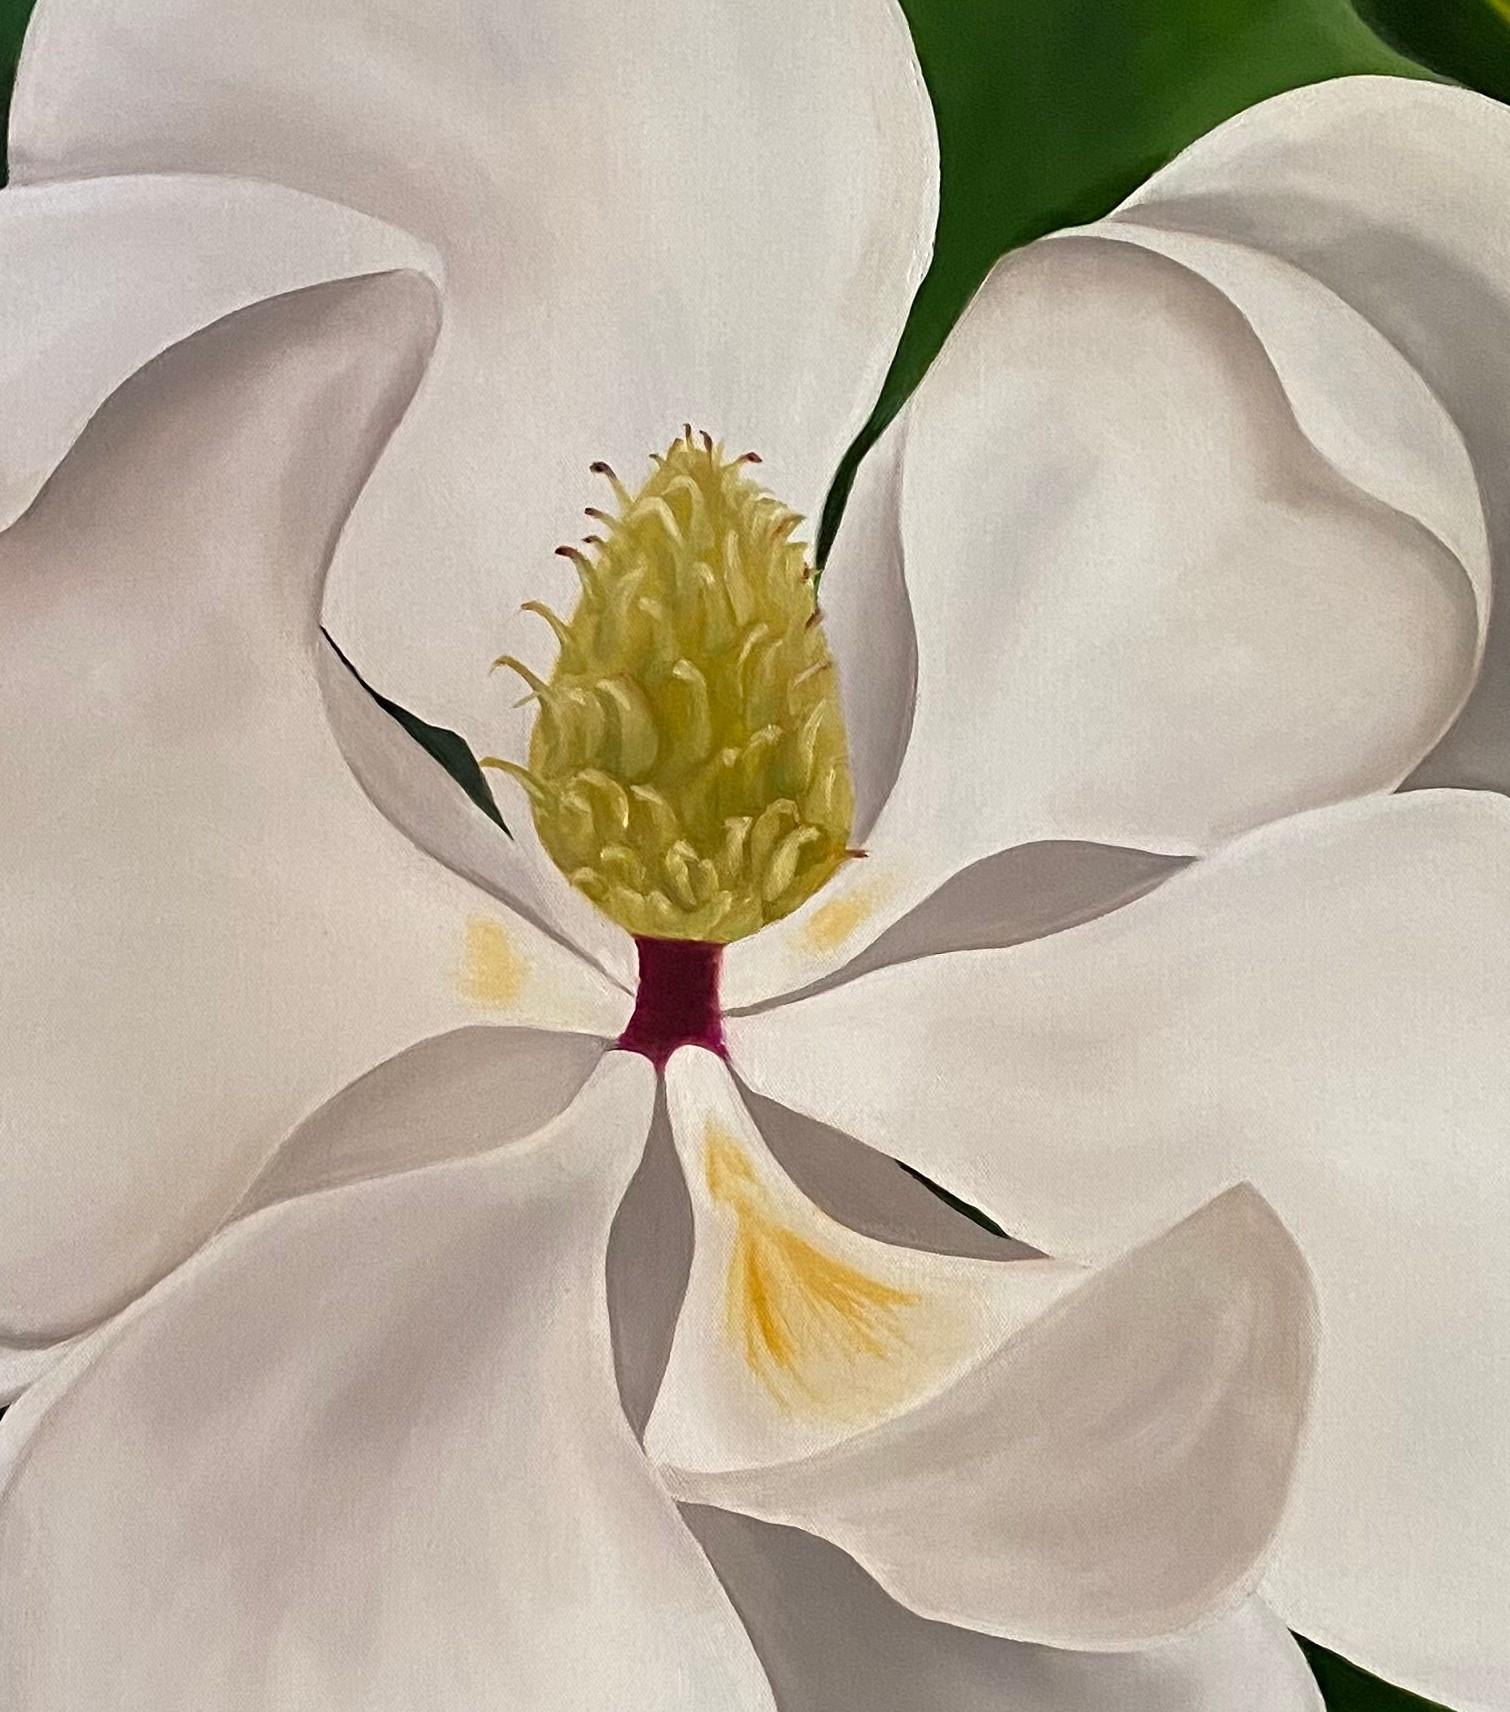  Magnolia géant  Réalisme 36 x 36 Huile sur toile - Galerie enveloppée   Fleuri - Réalisme américain Painting par Susan Meeks